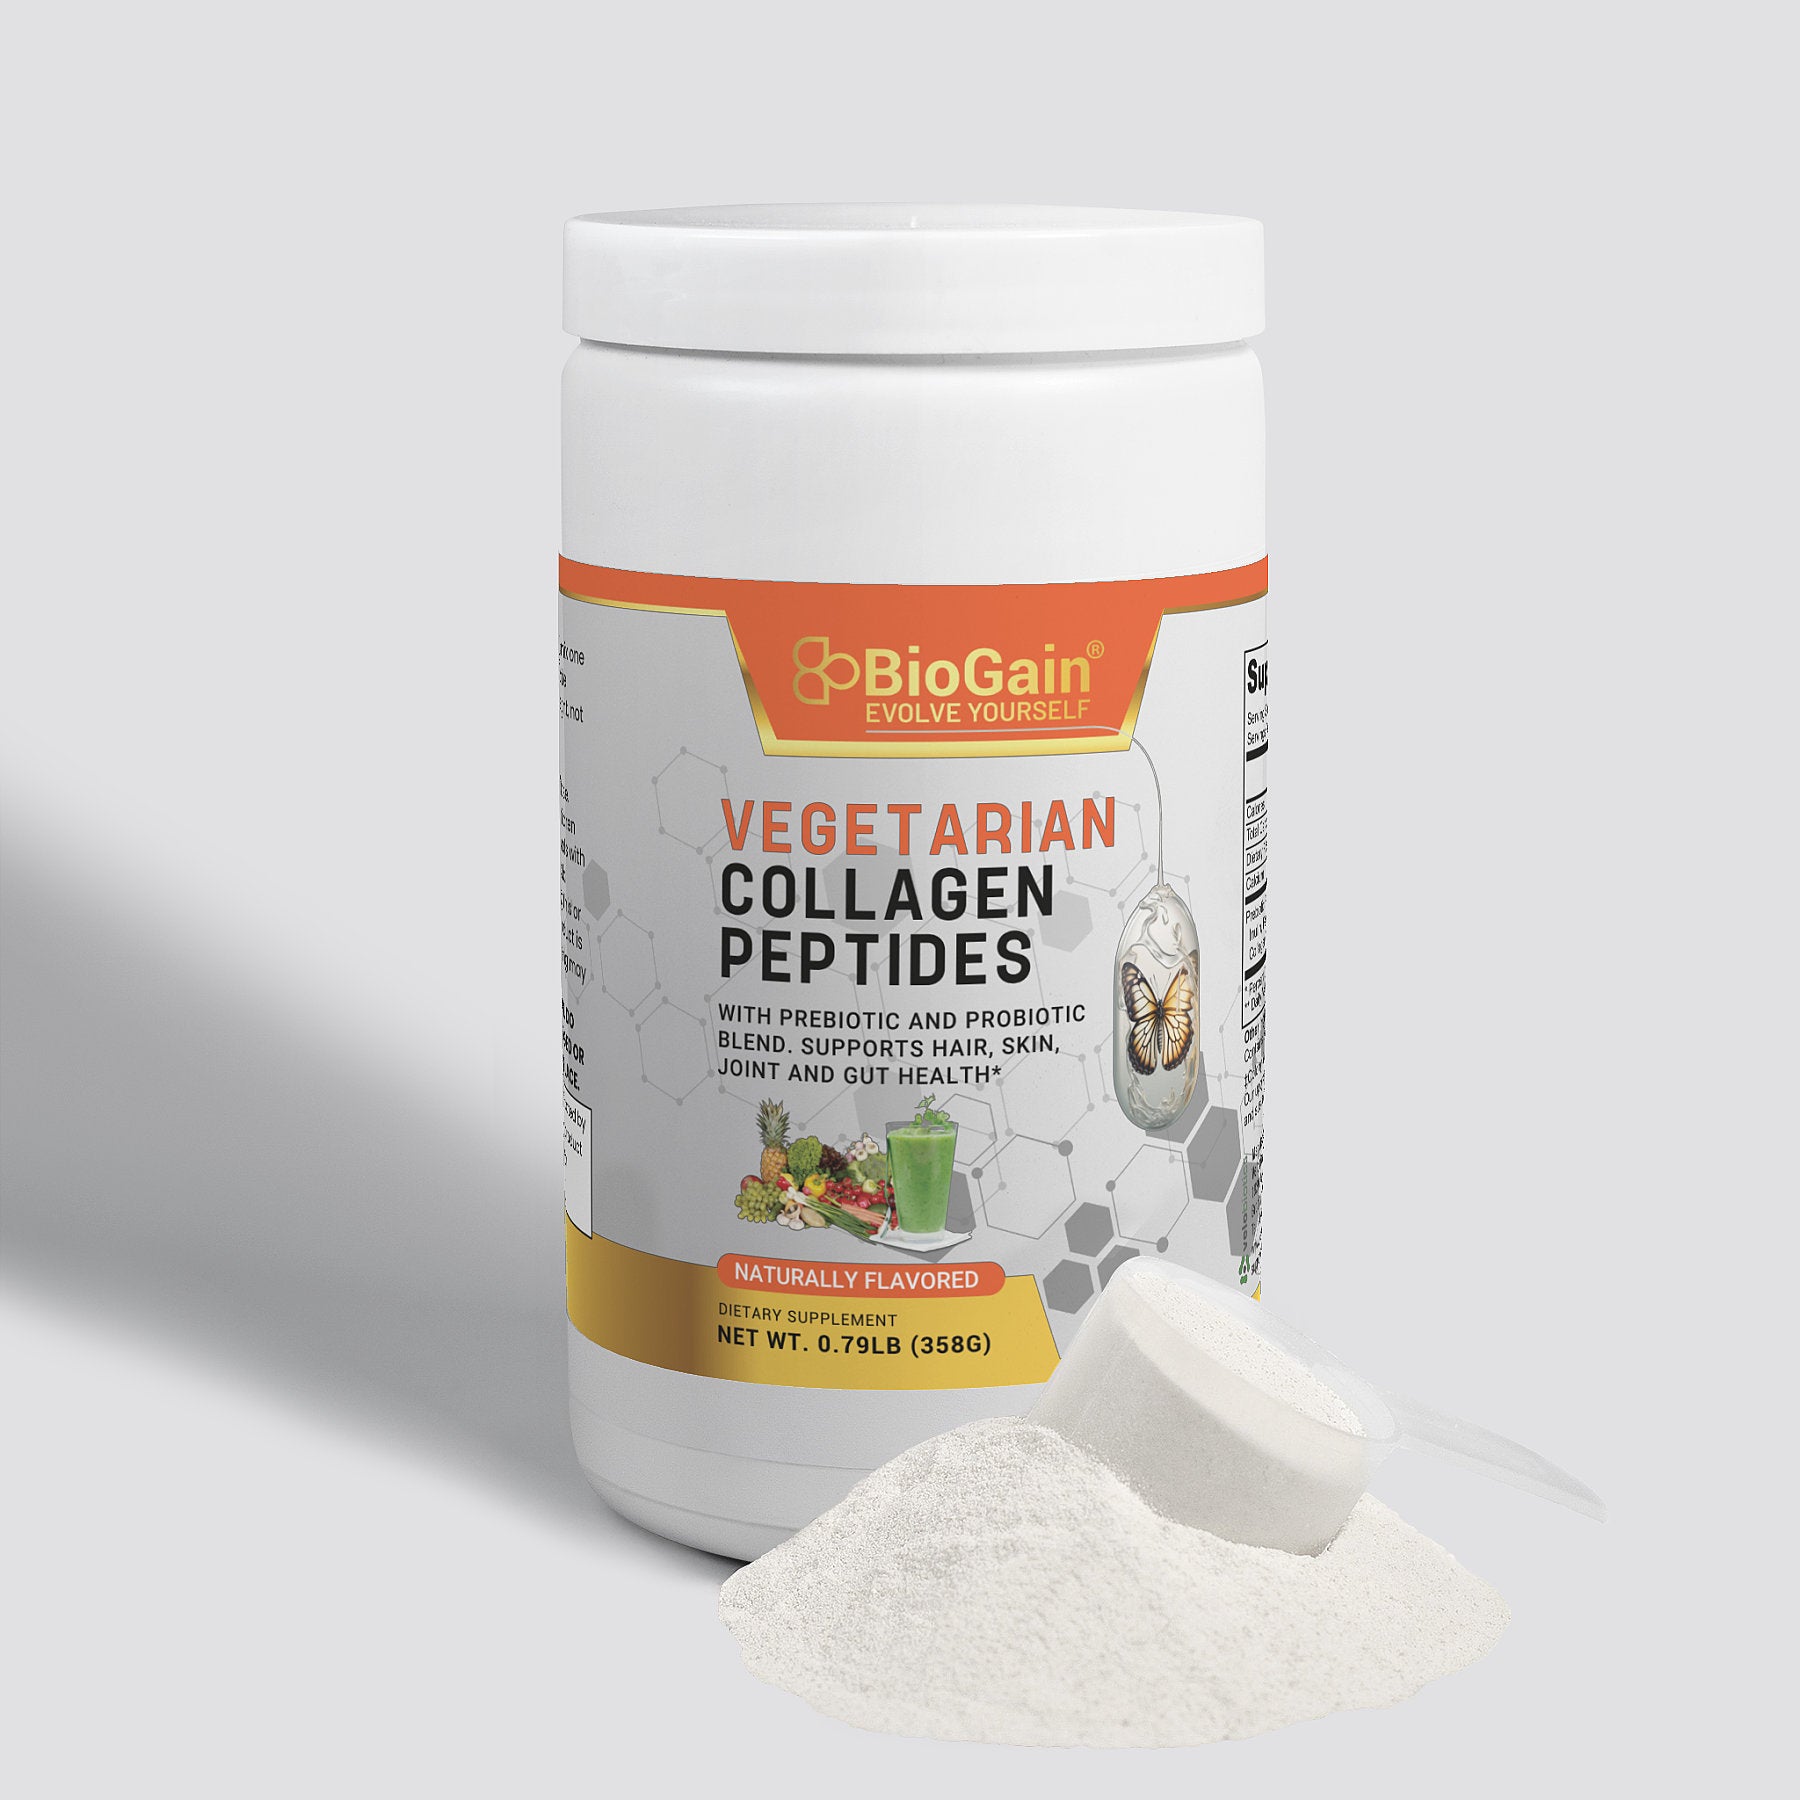 BioGain Vegetarian Collagen Peptides